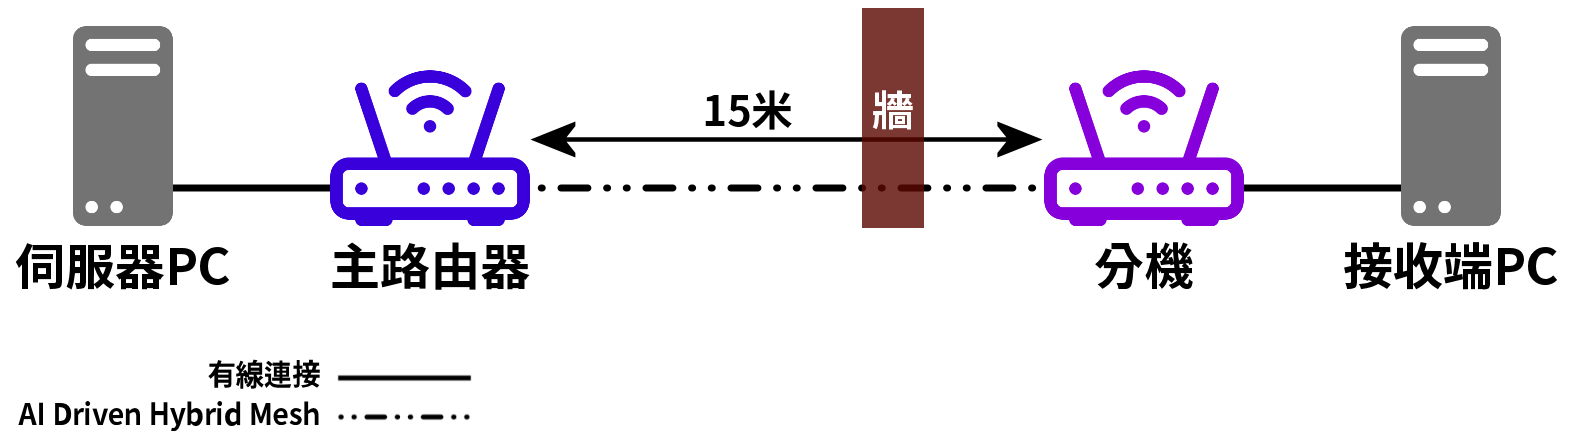 Test schematic